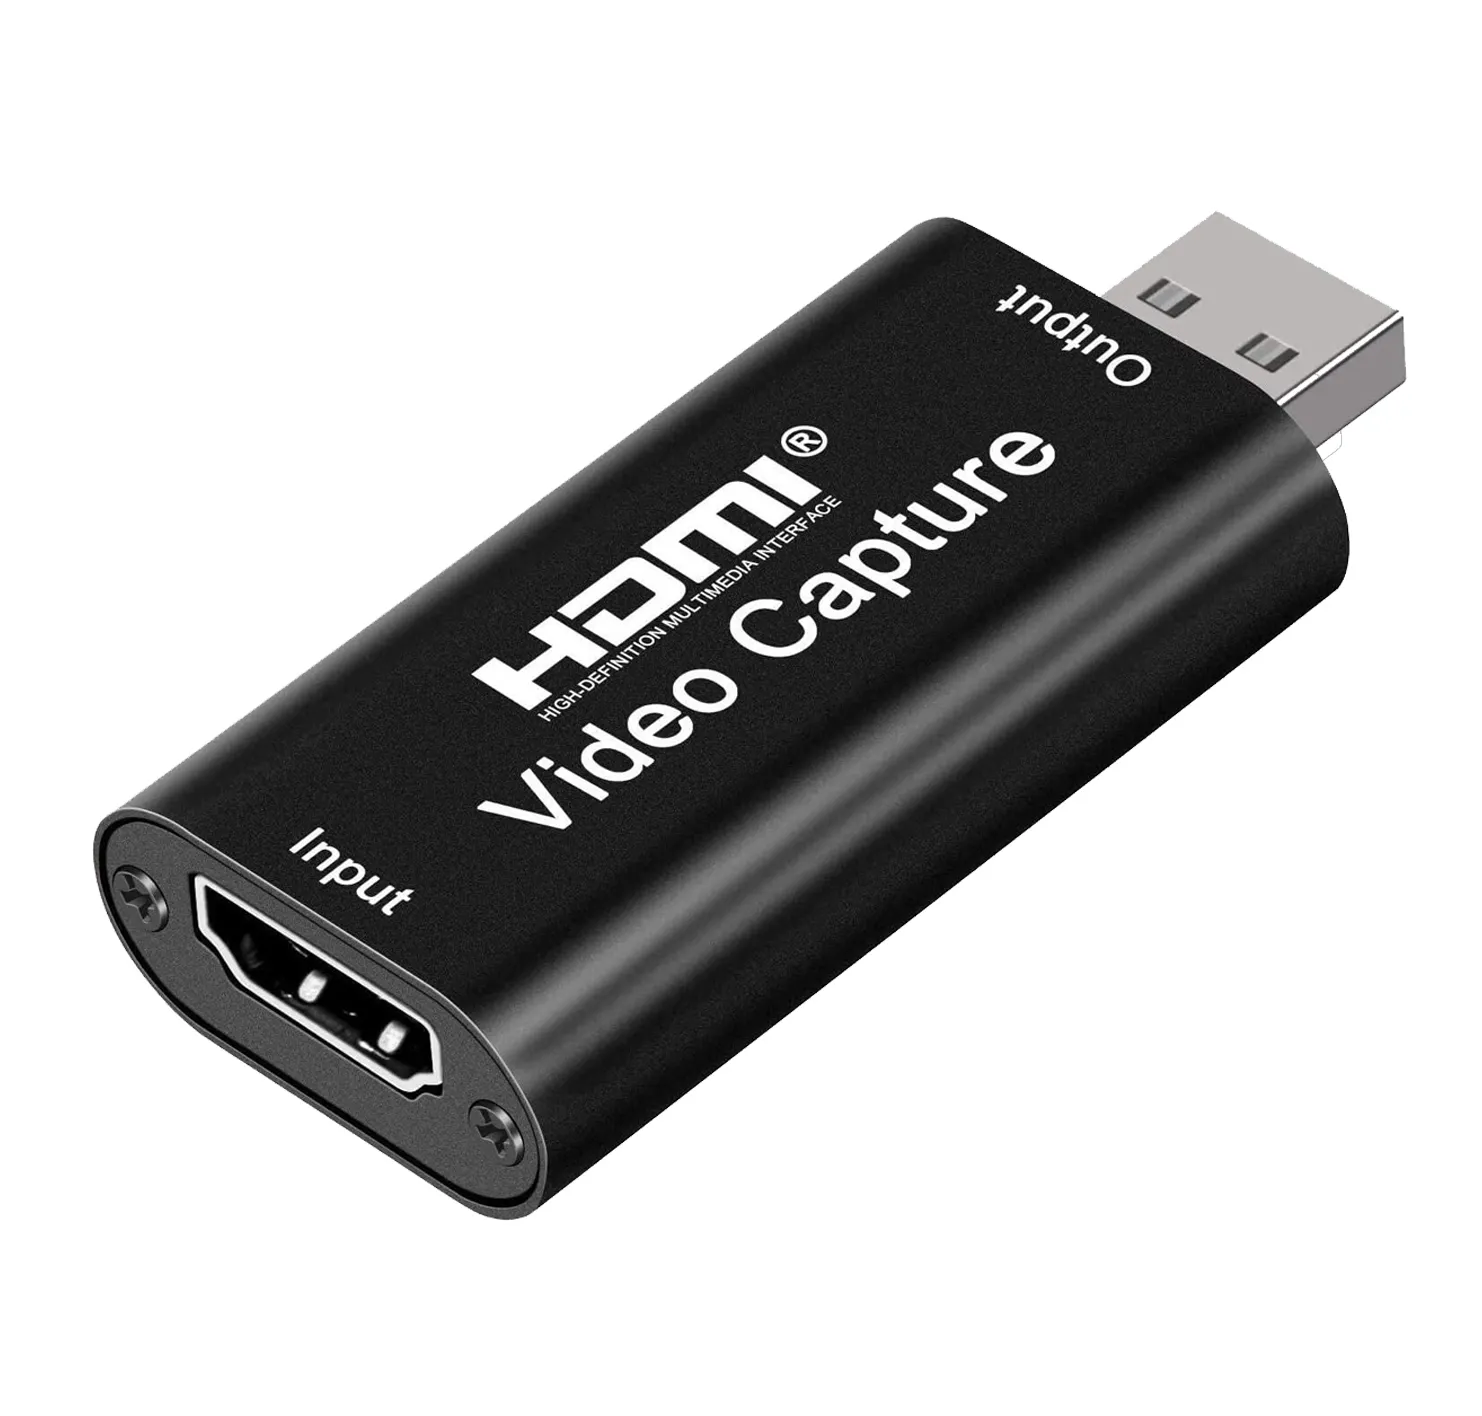 DTECH HD mini 1080p 4k portatile in tempo reale di registrazione USB hdmi scheda di acquisizione video